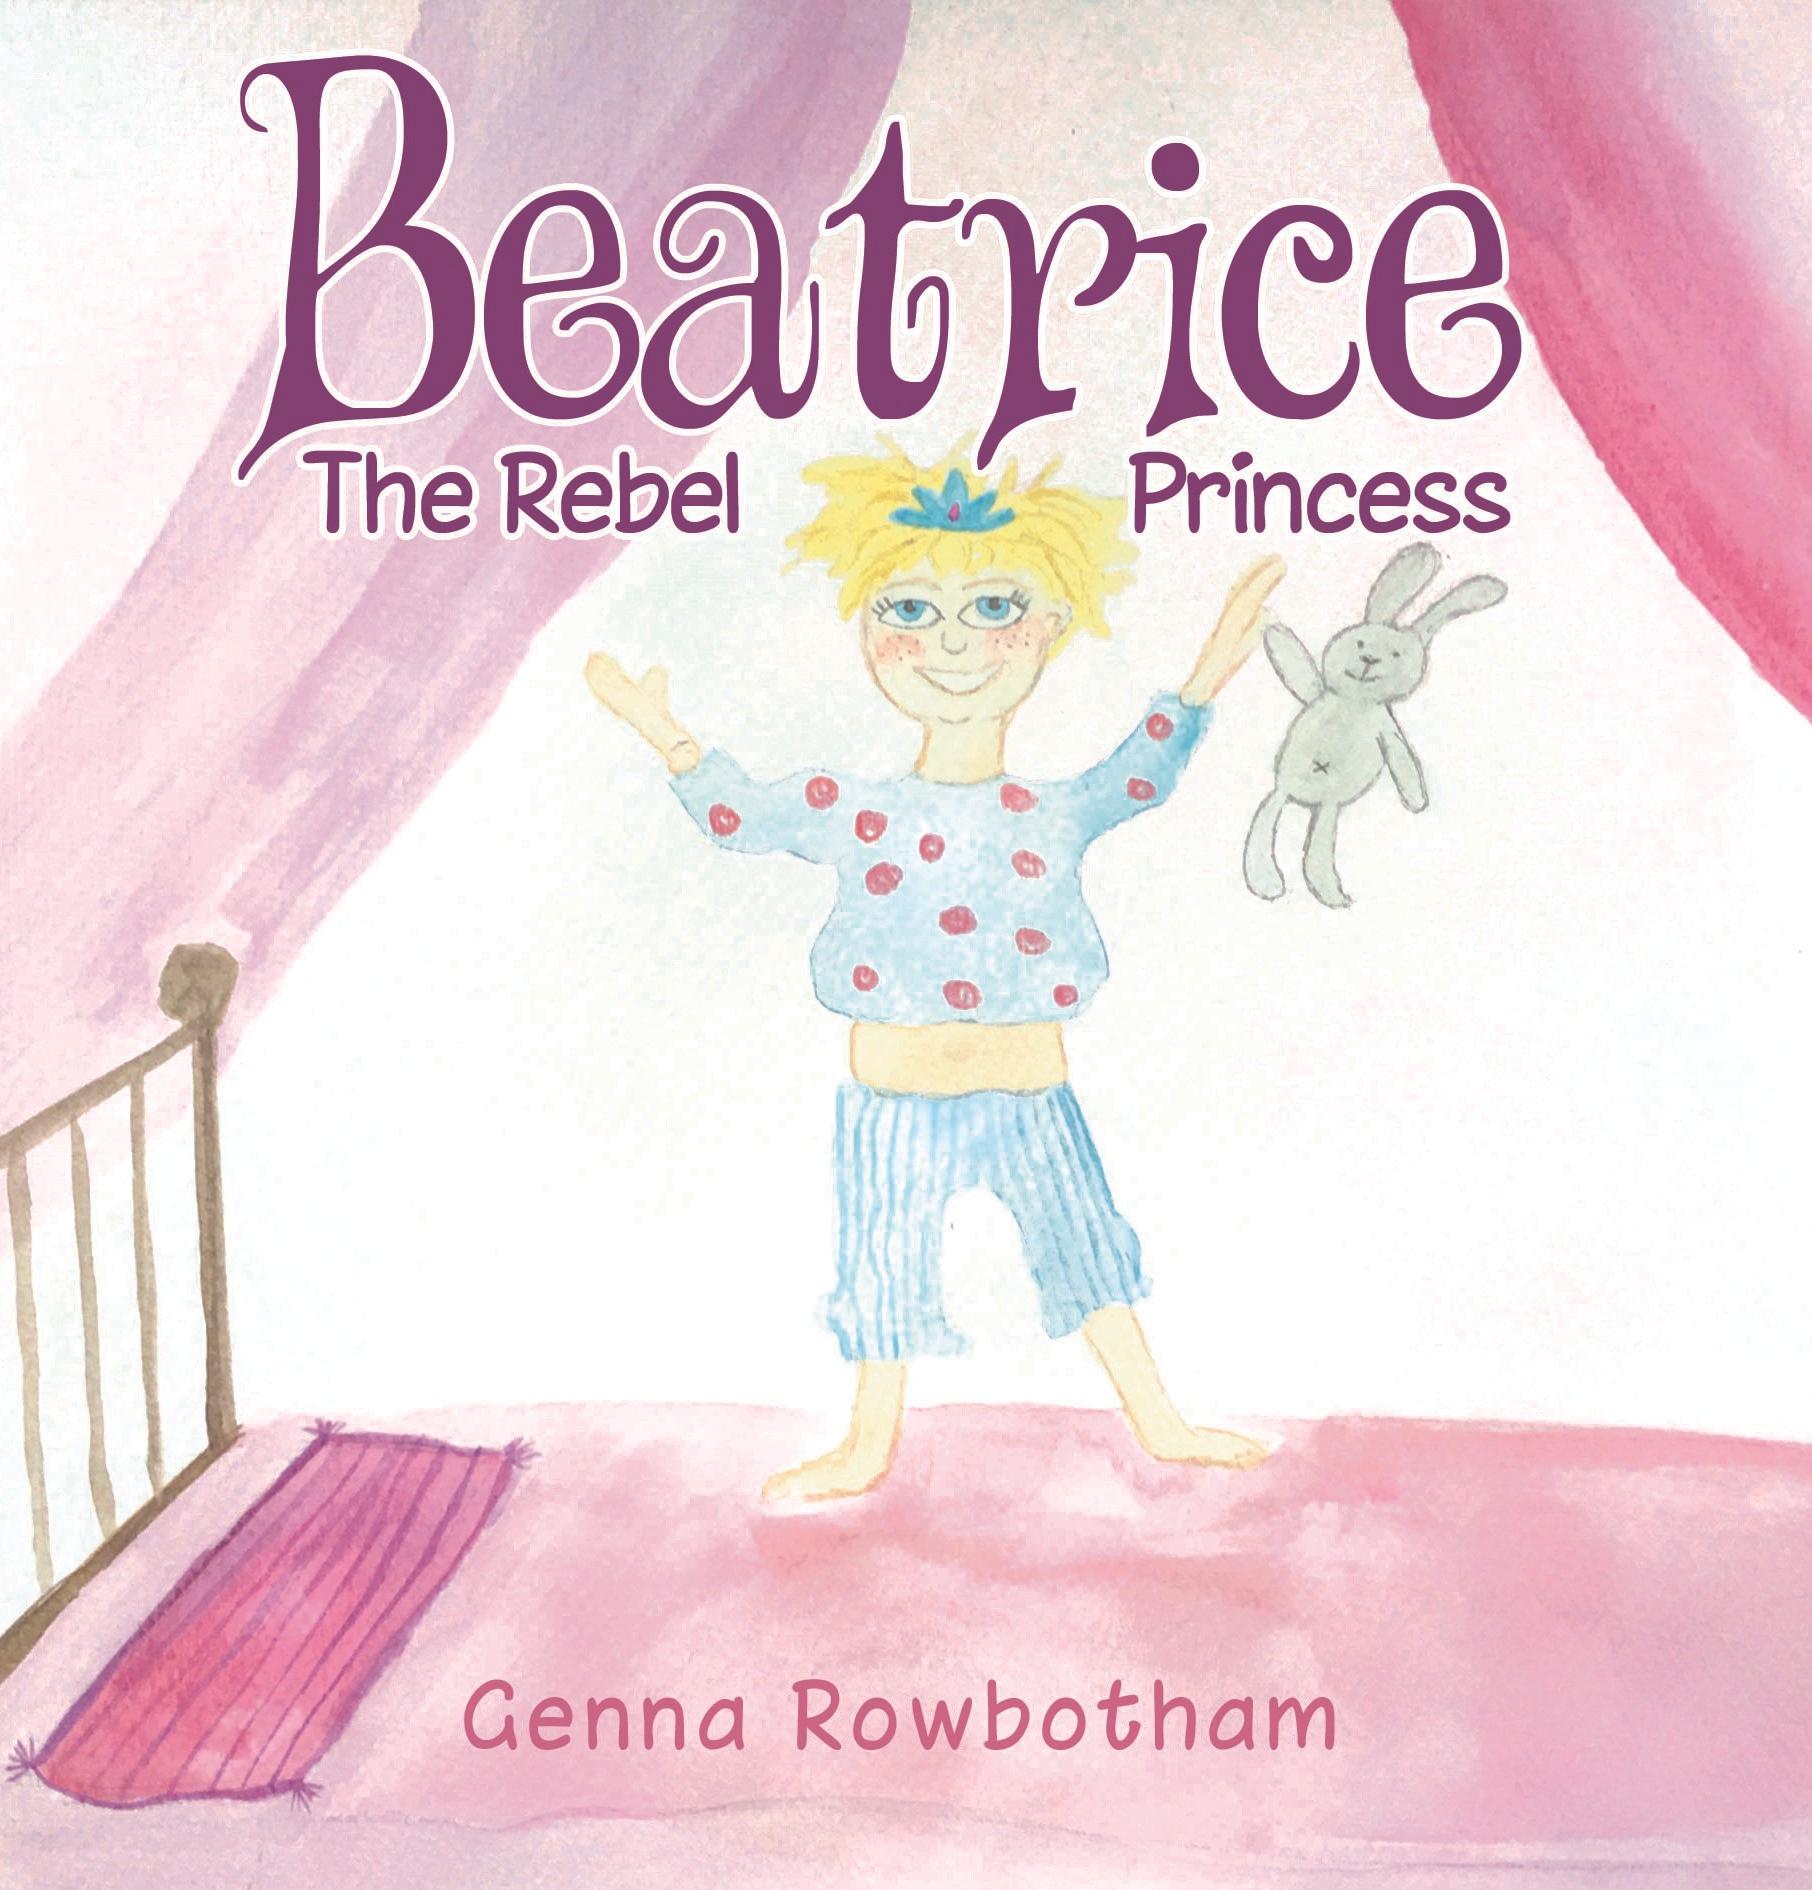 Beatrice: The Rebel Princess